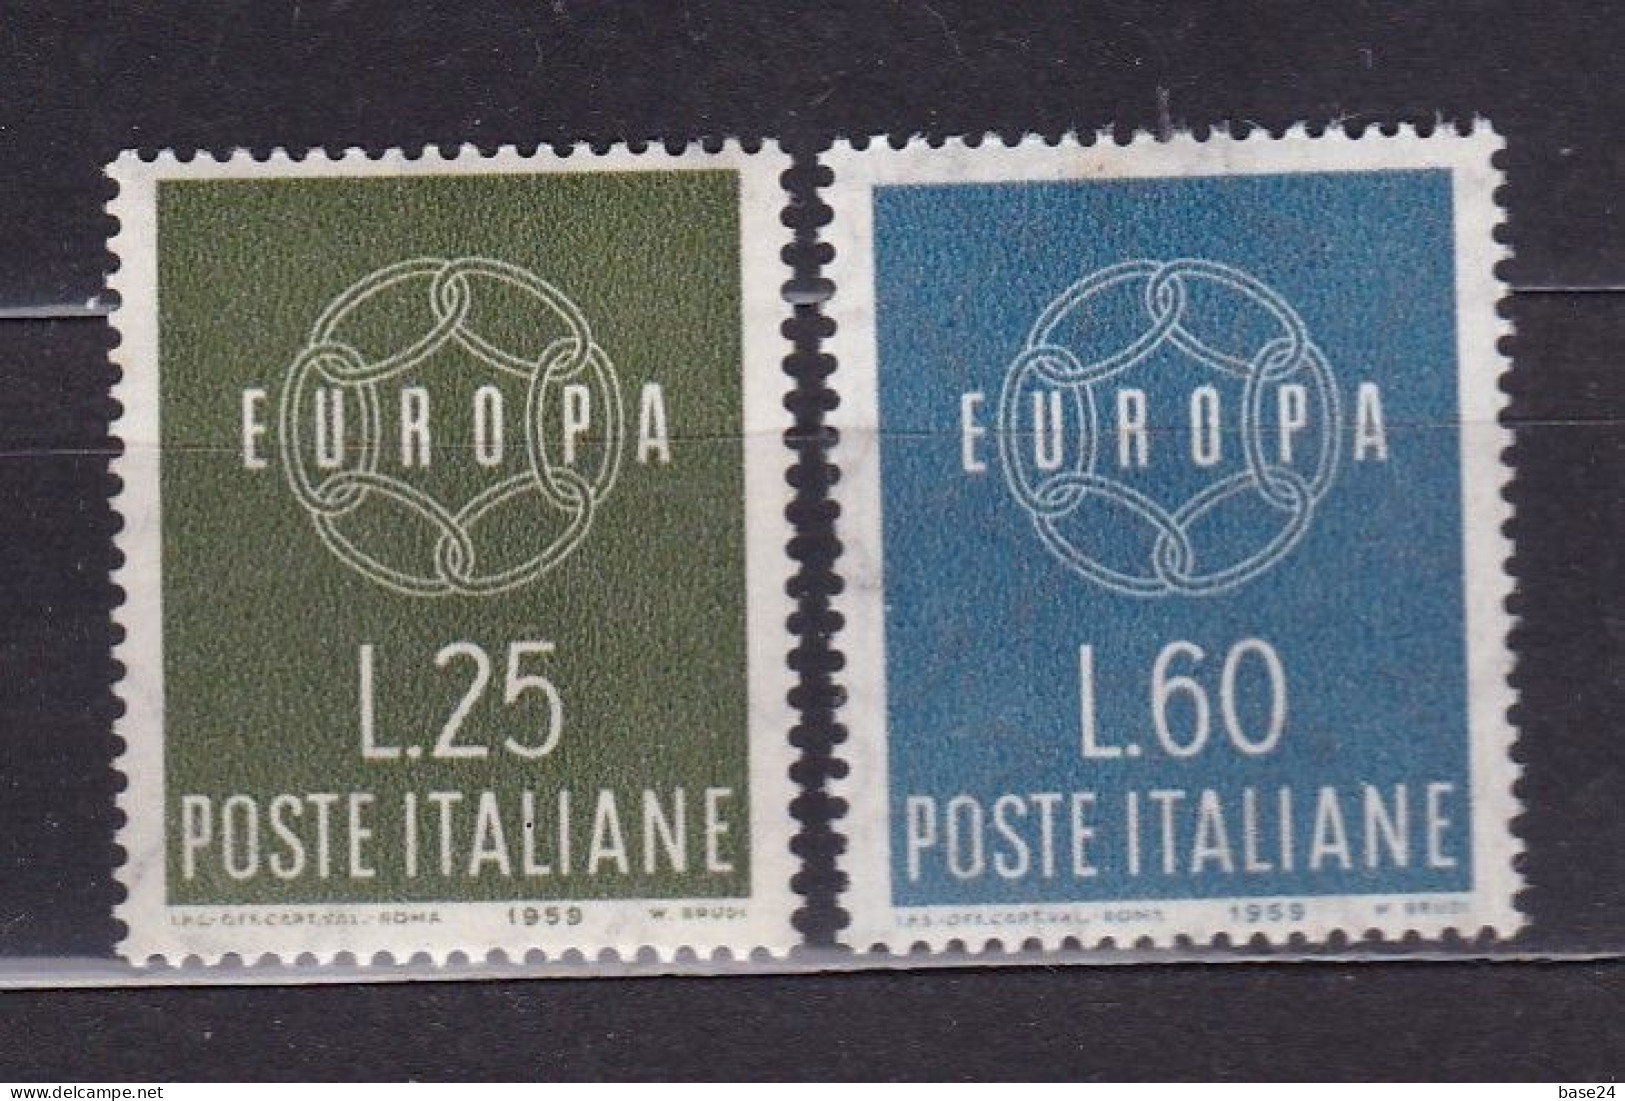 1959 Italia Italy EUROPA CEPT Serie Di 2 Valori MNH** CATENA A 6 ANELLI, 6 LINK CHAIN - 1959